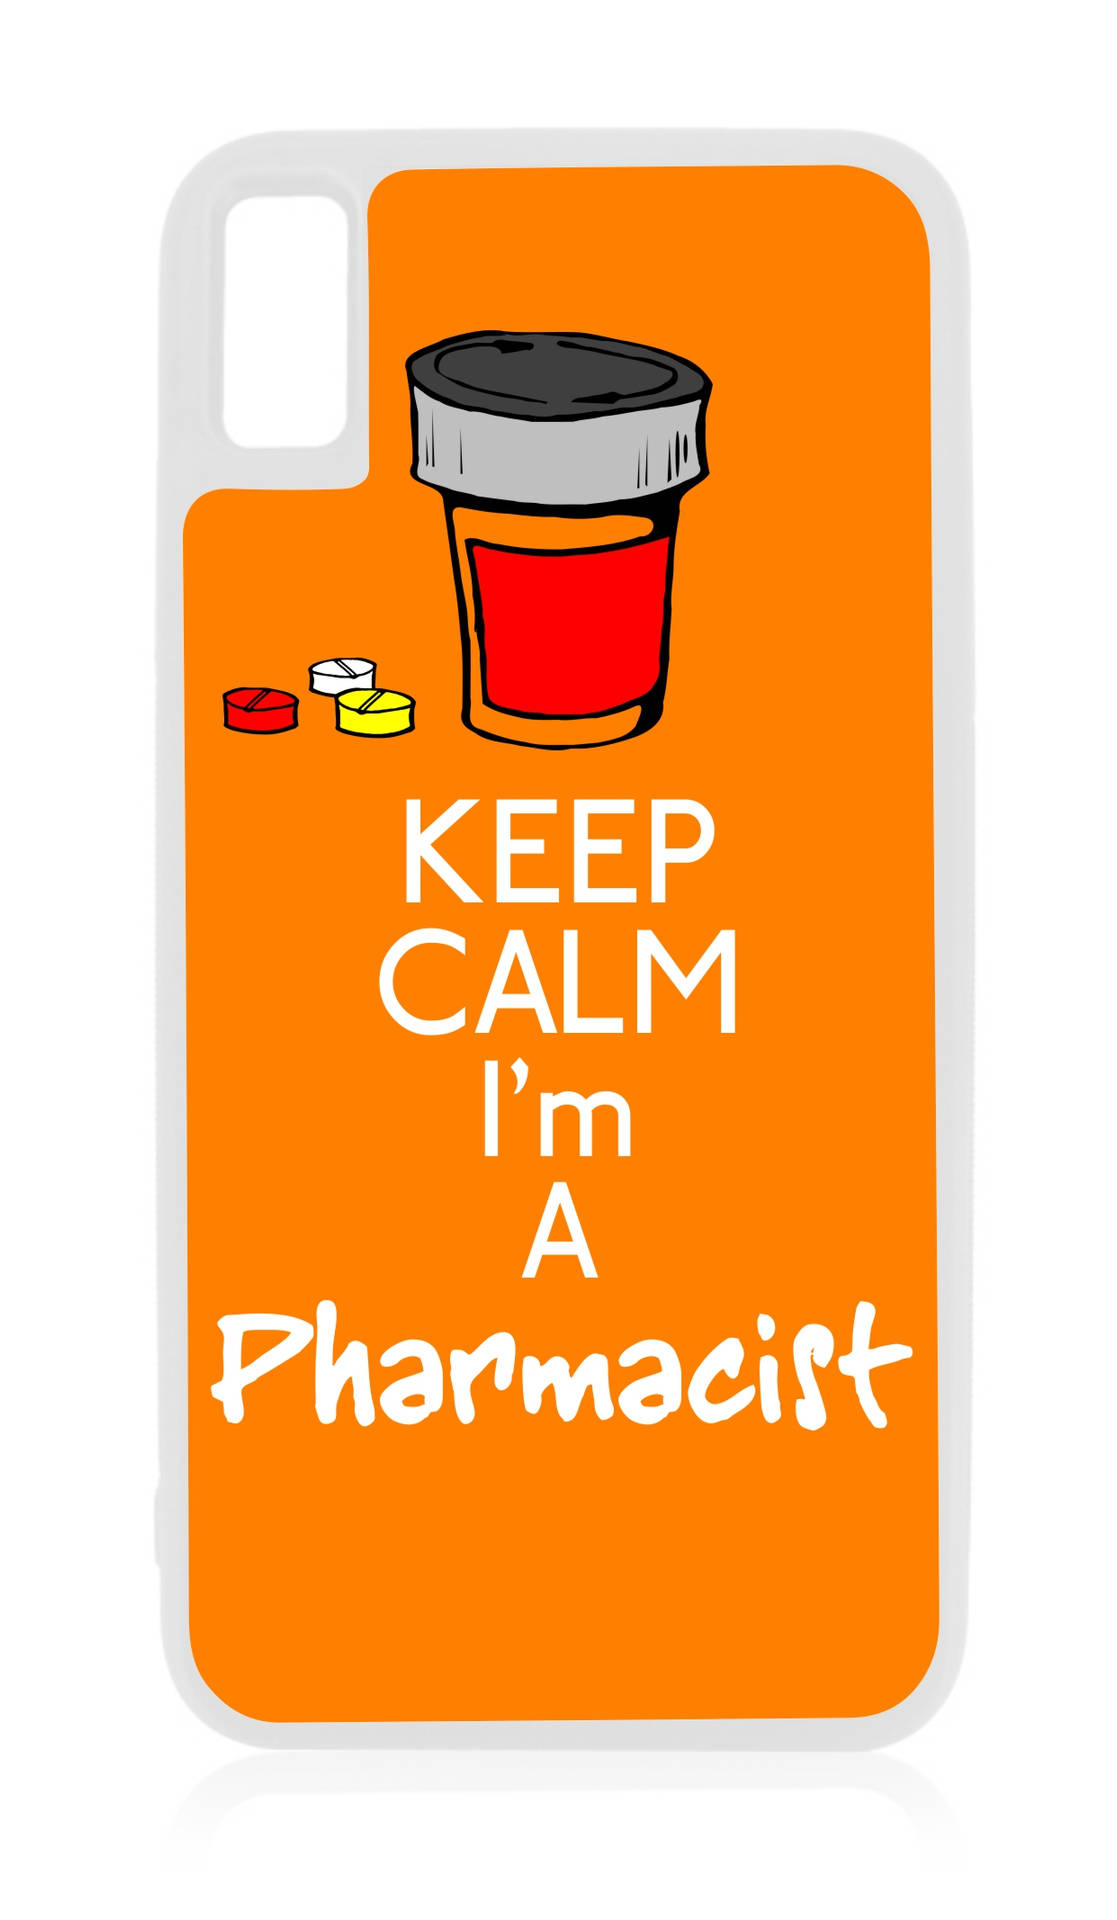 Keep Calm I'm A Pharmacist Phone Case Background